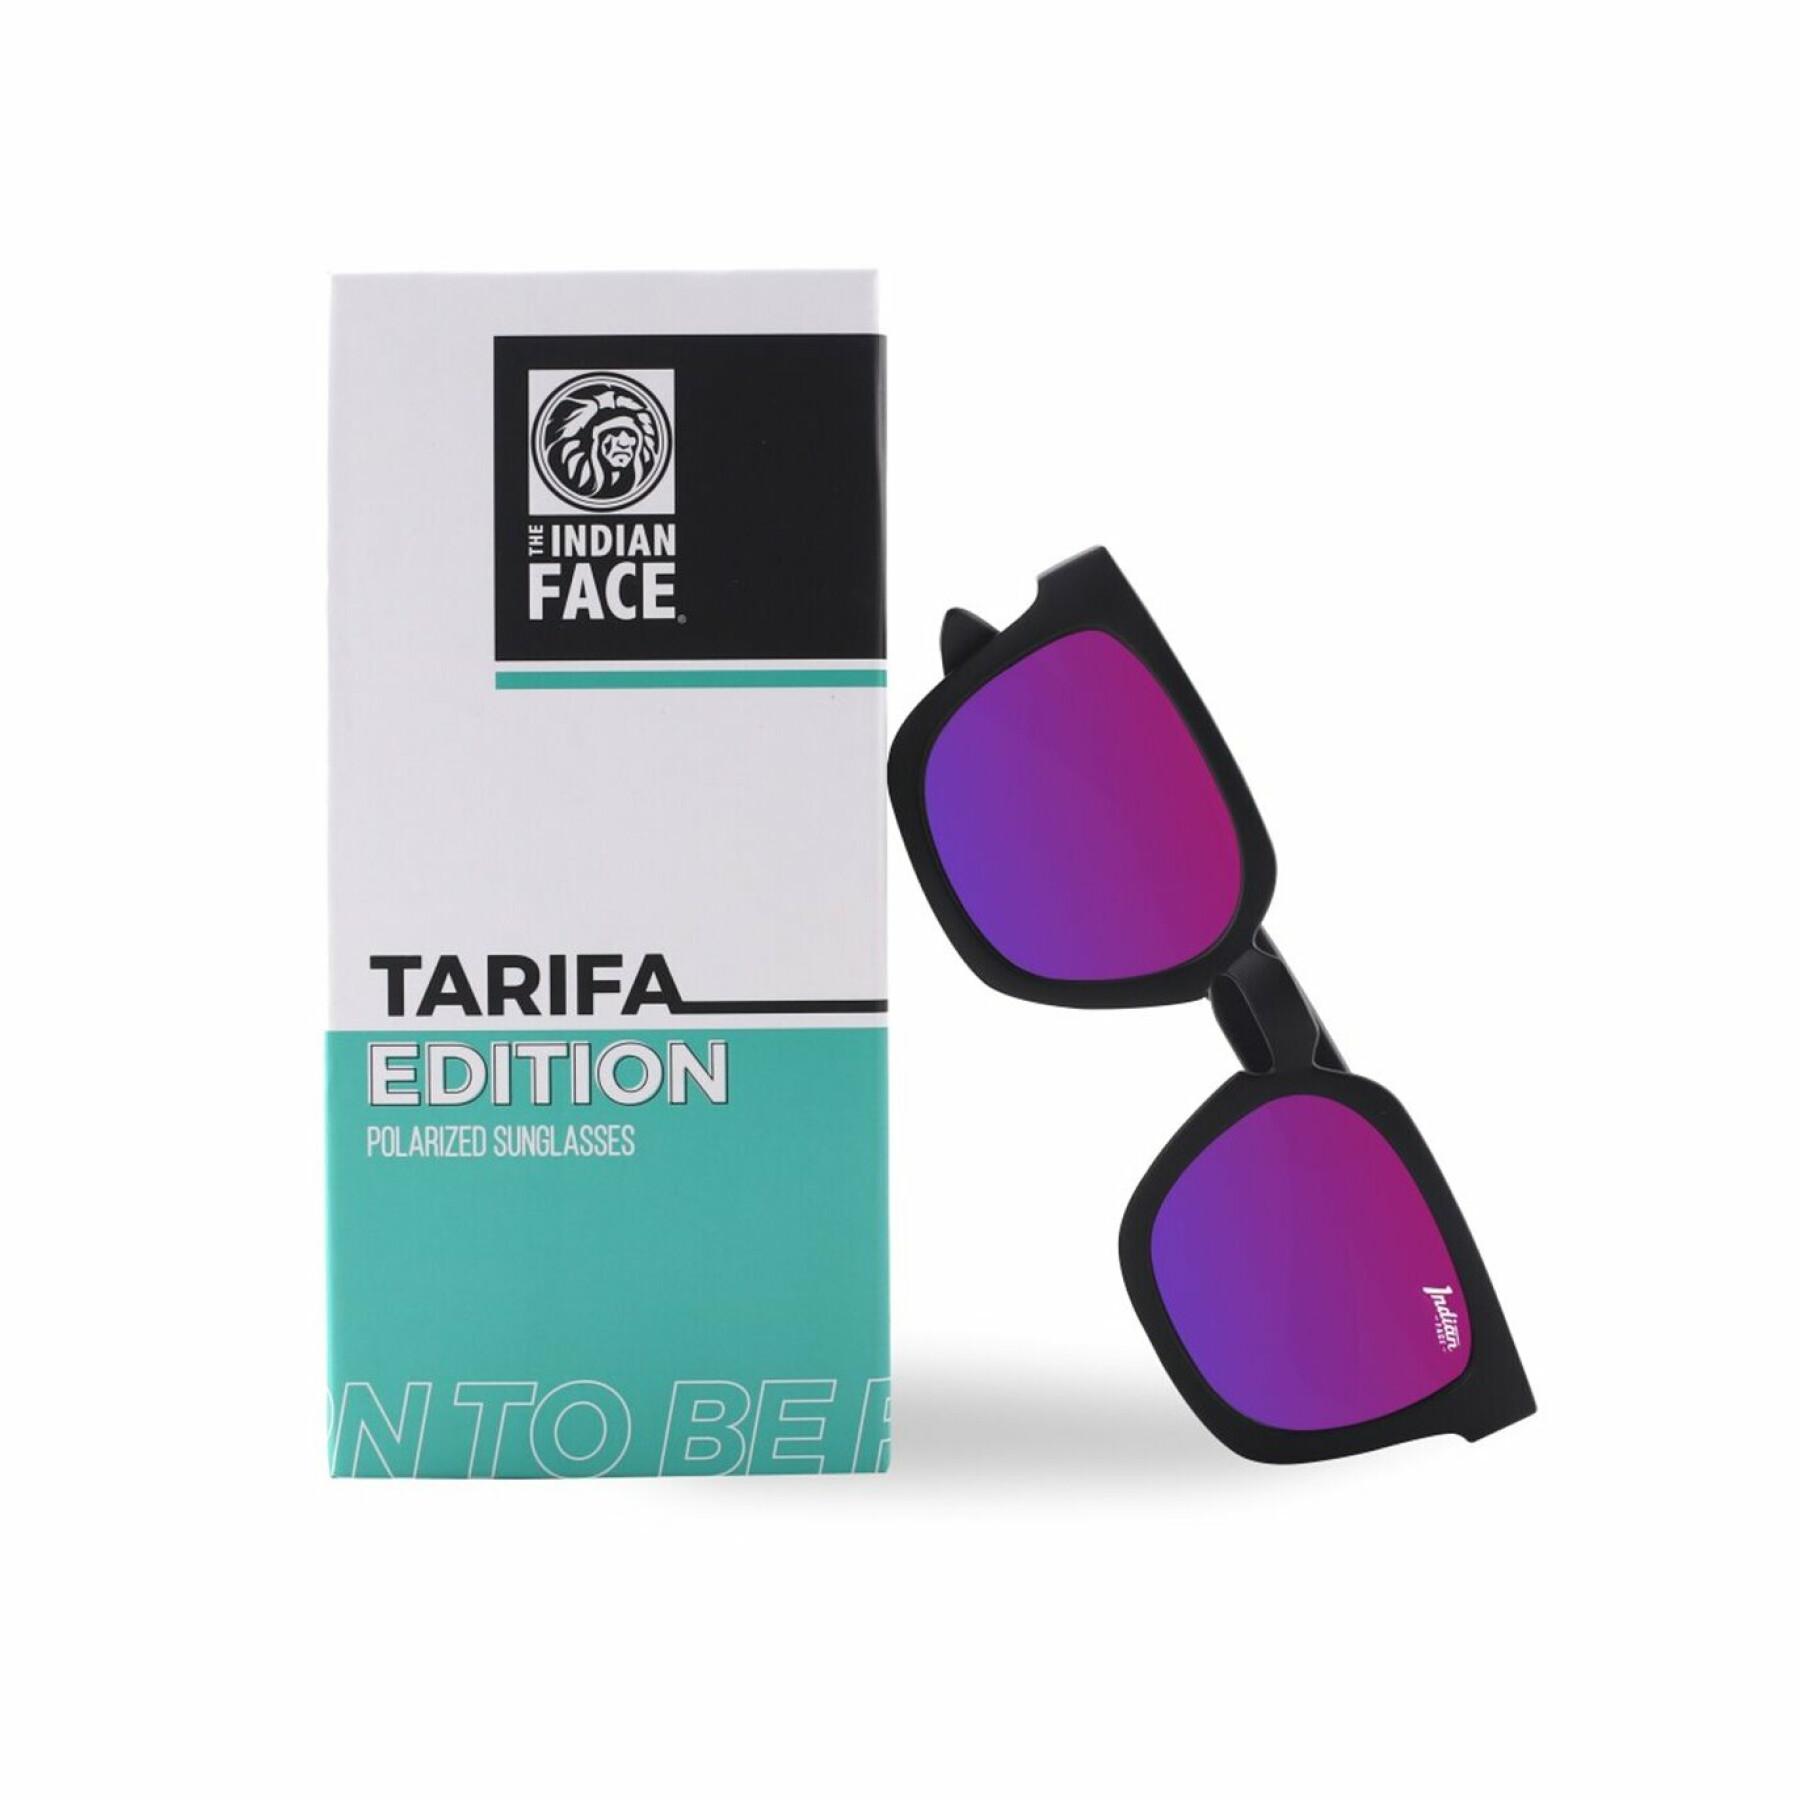 Lunettes de soleil The Indian Face Tarifa